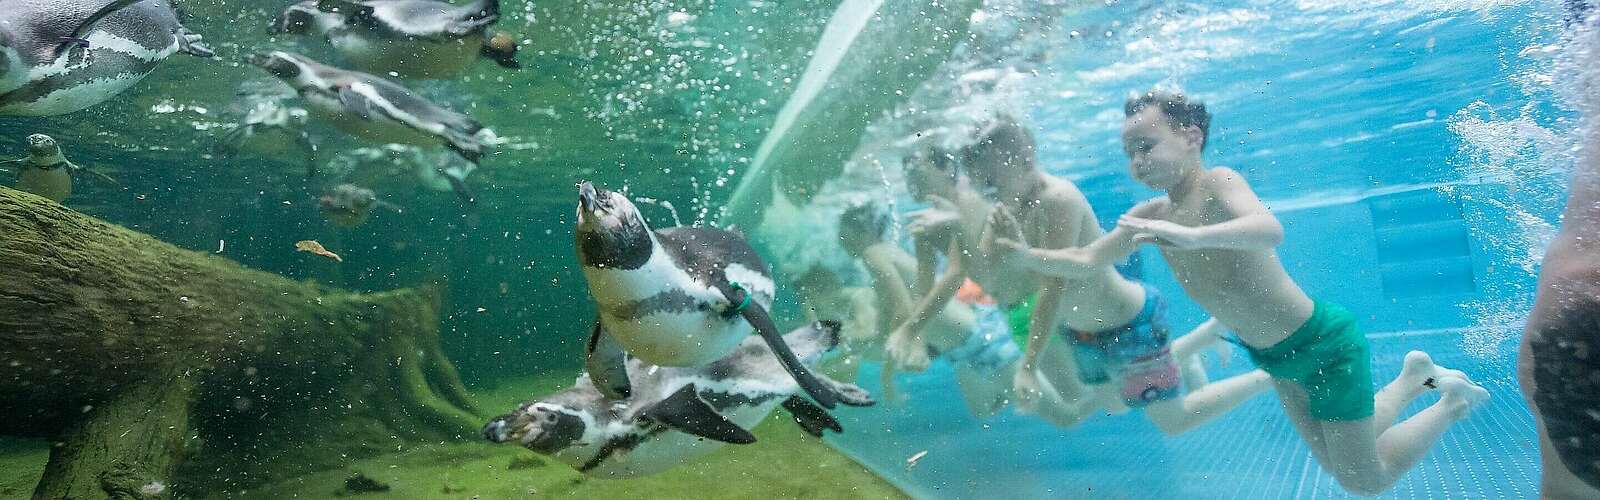 Schwimmen mit Pinguinen,
        
    

        Foto: Spreewelten GmbH/Manuel Frauendorf